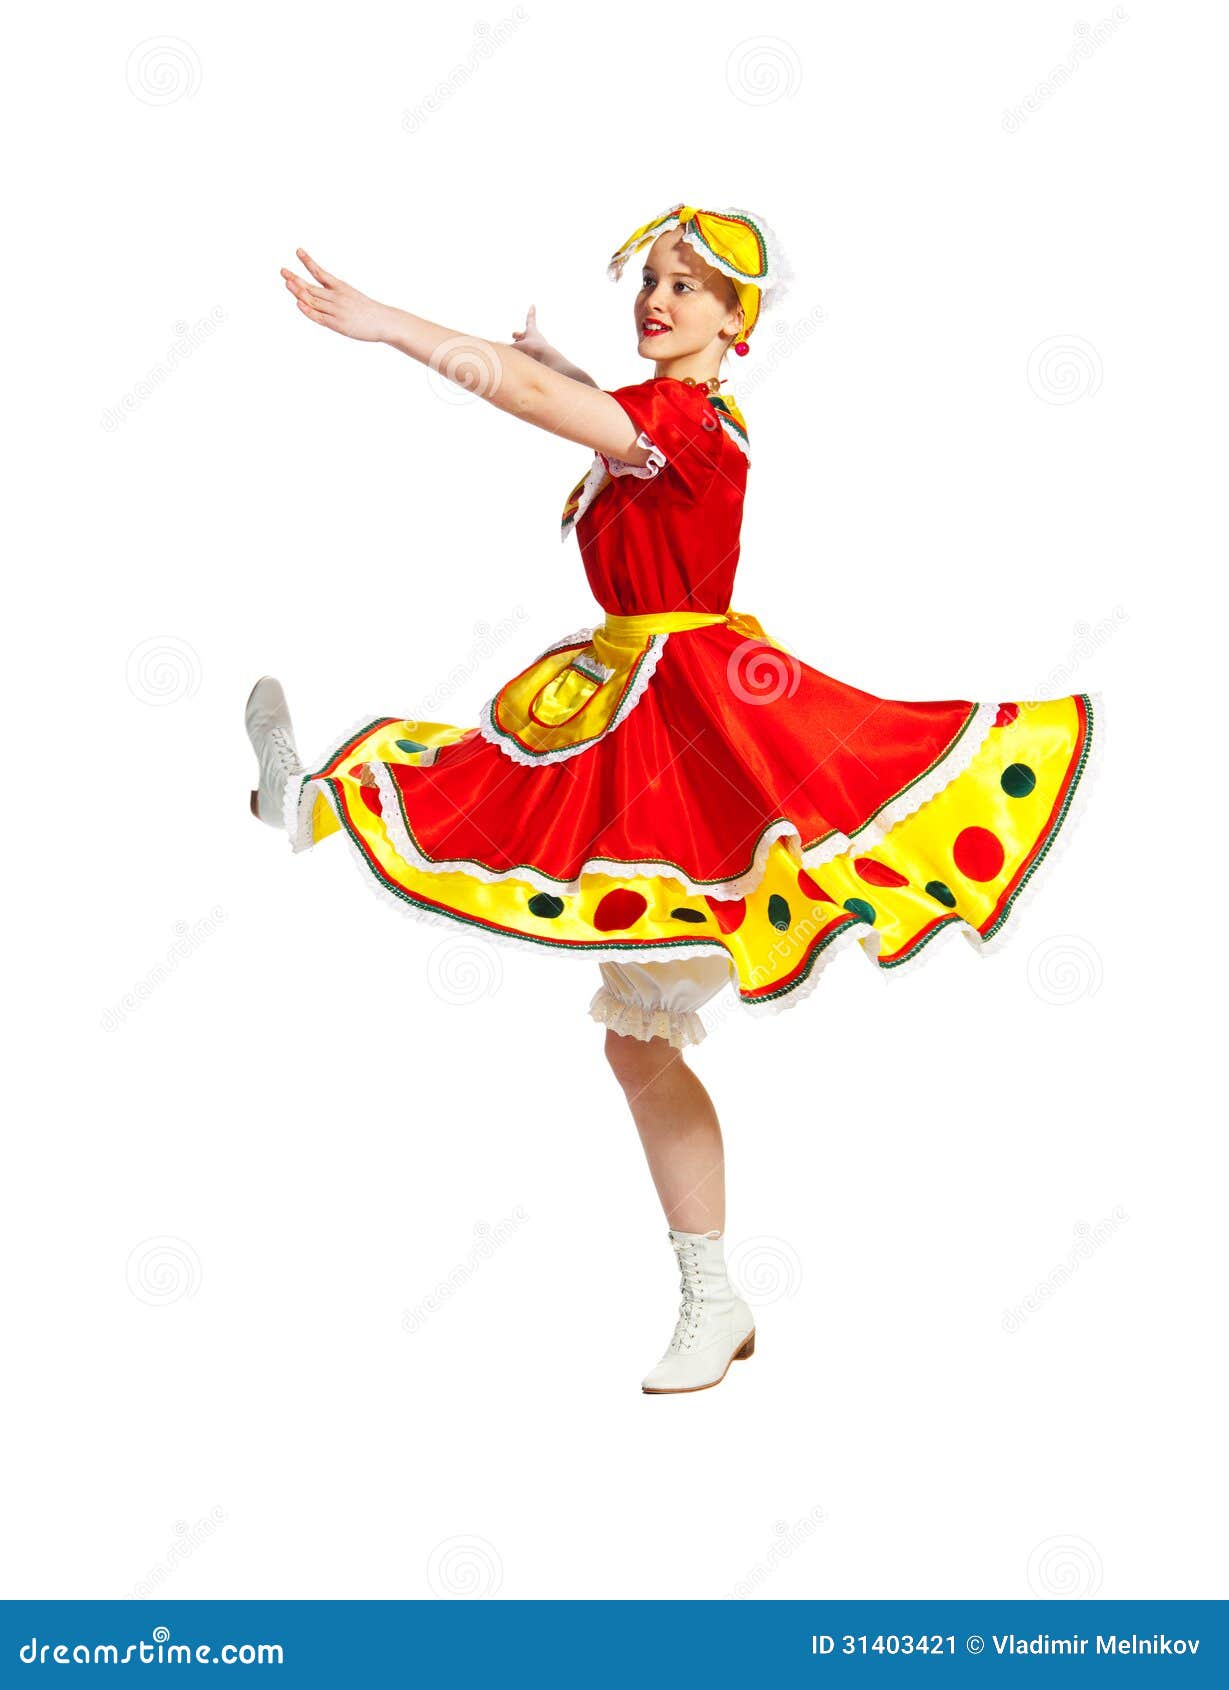 Русский народный танец девушки. Русский народный танец девушка. Танцовщица народных танцев. Девушка танцует народный танец. Танцовщица русских народных танцев.